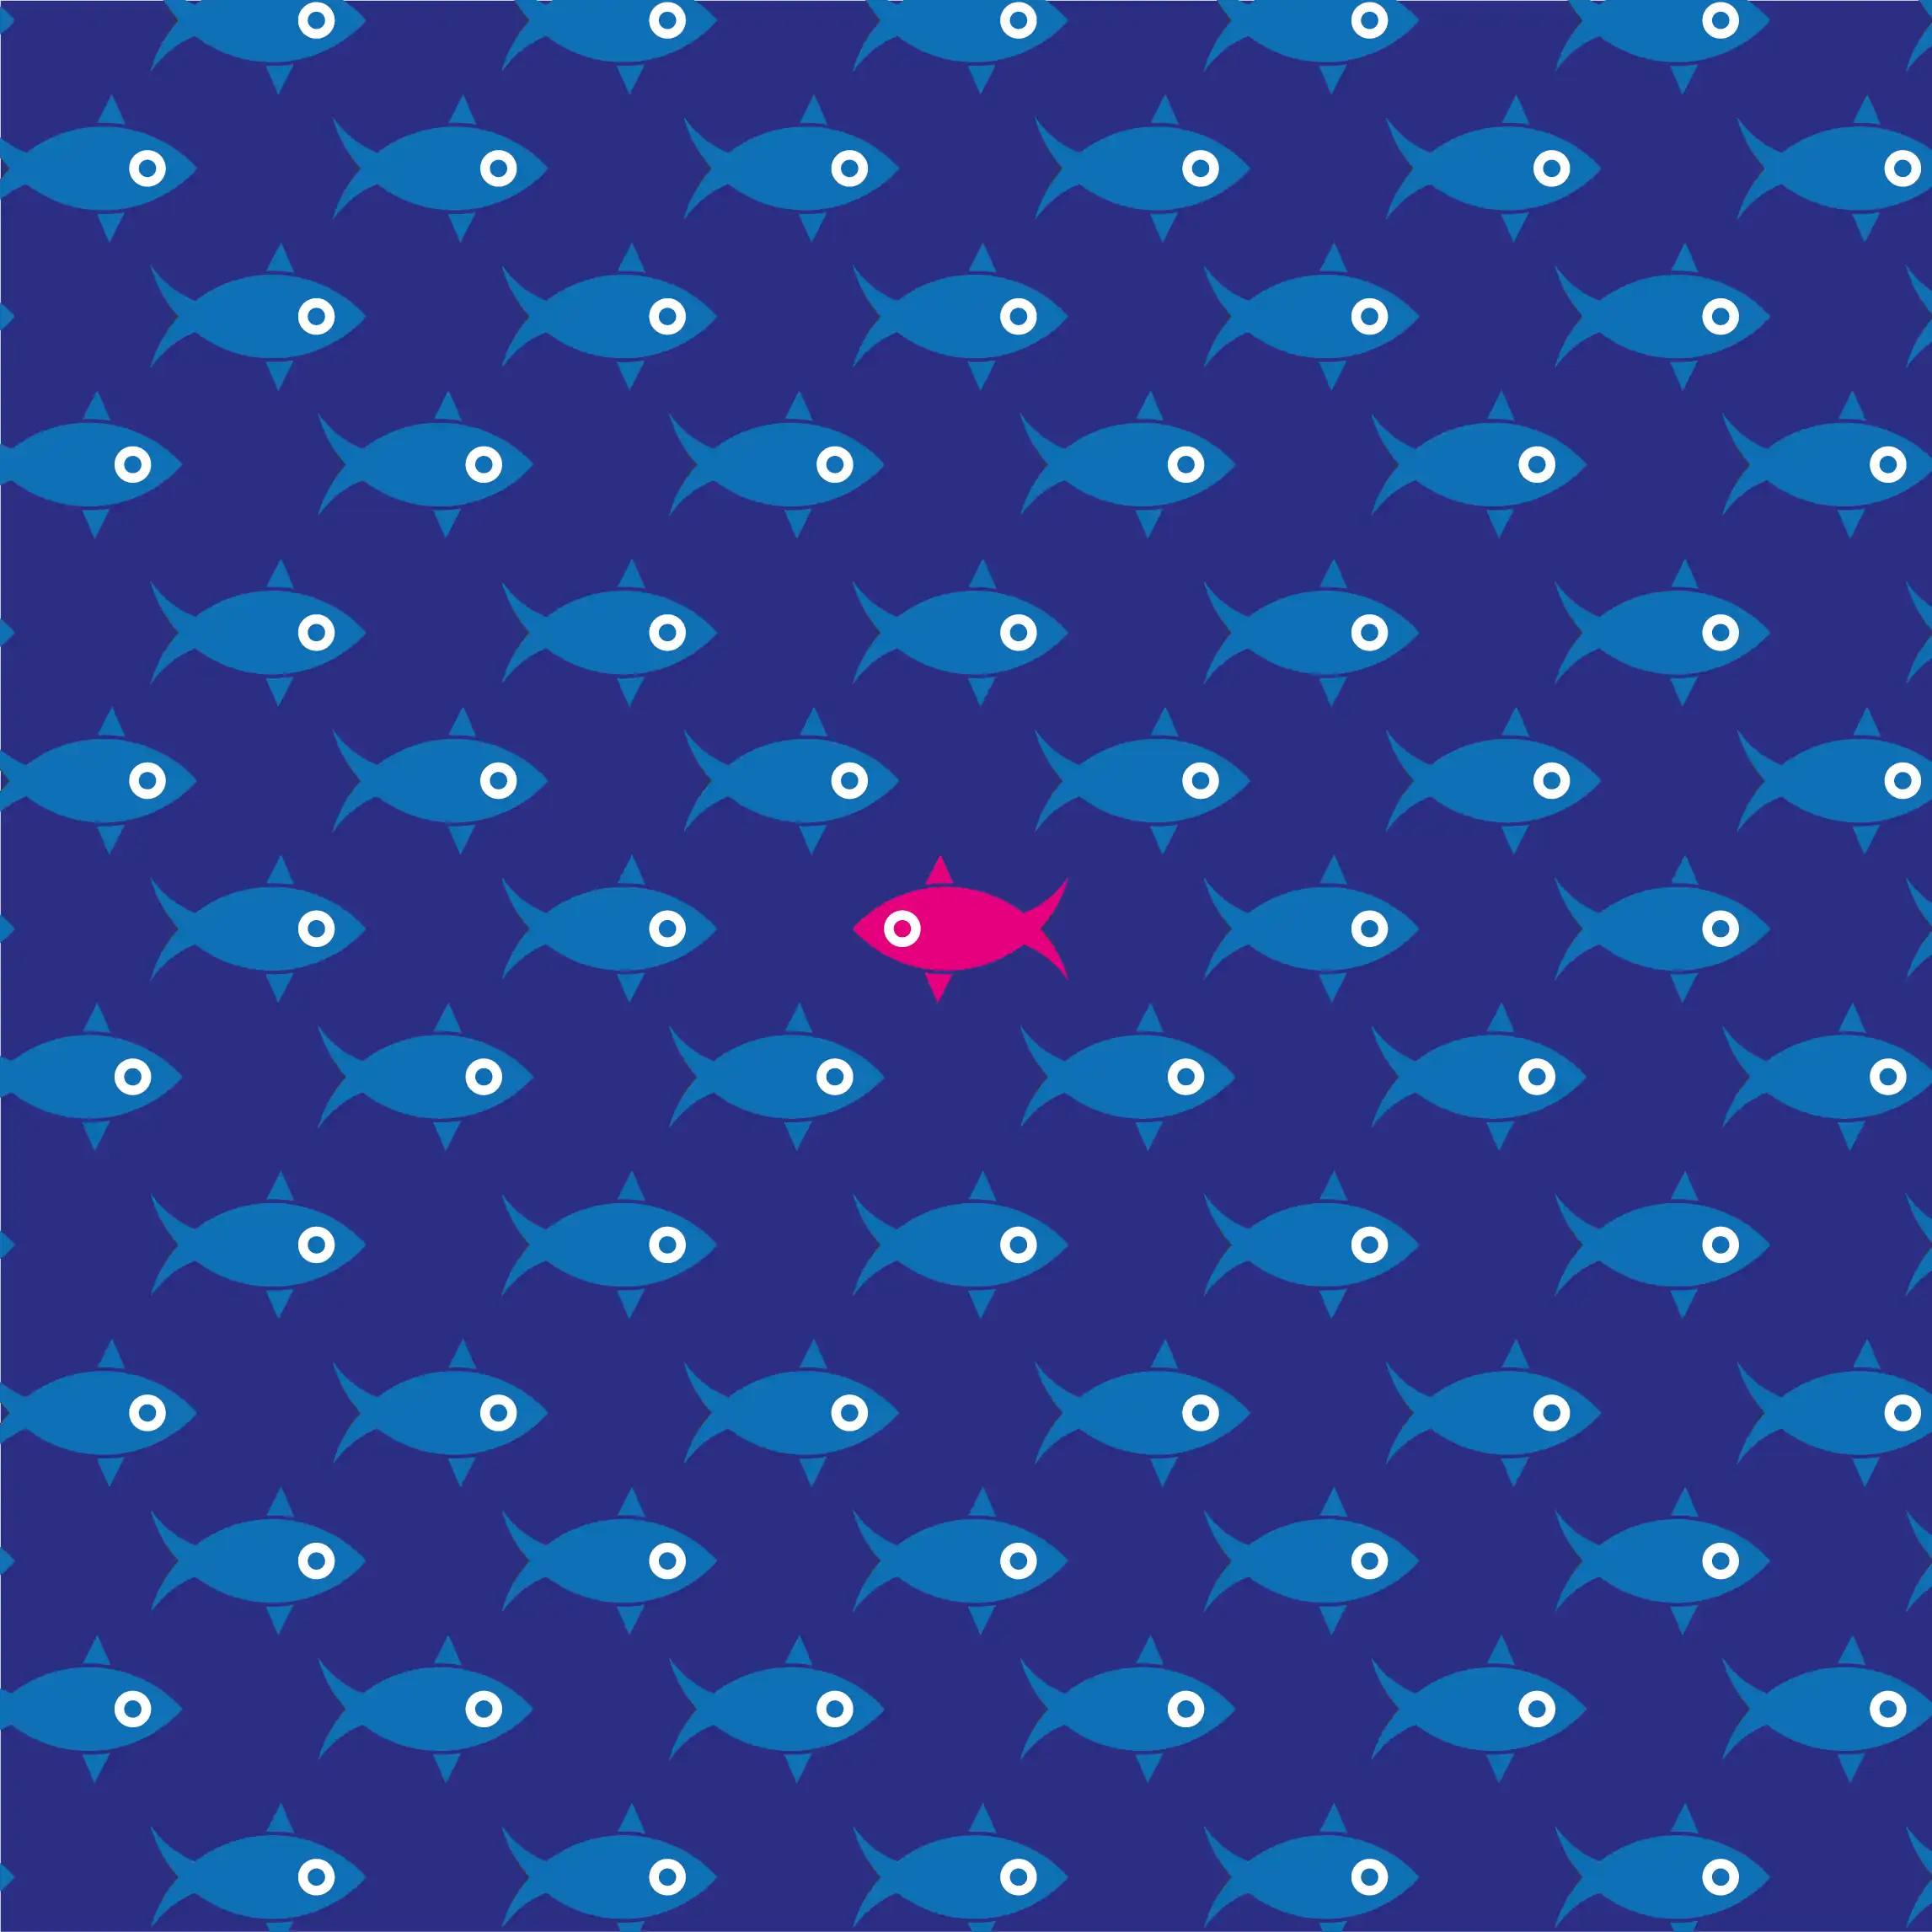 immagine dallo sfondo blu con illustrazione di pesci orientati verso destra e solo uno al centro è di colore rosa ed è rivolto verso sinistra. Cover articolo del blog riguardo il posizionamento delle aziende